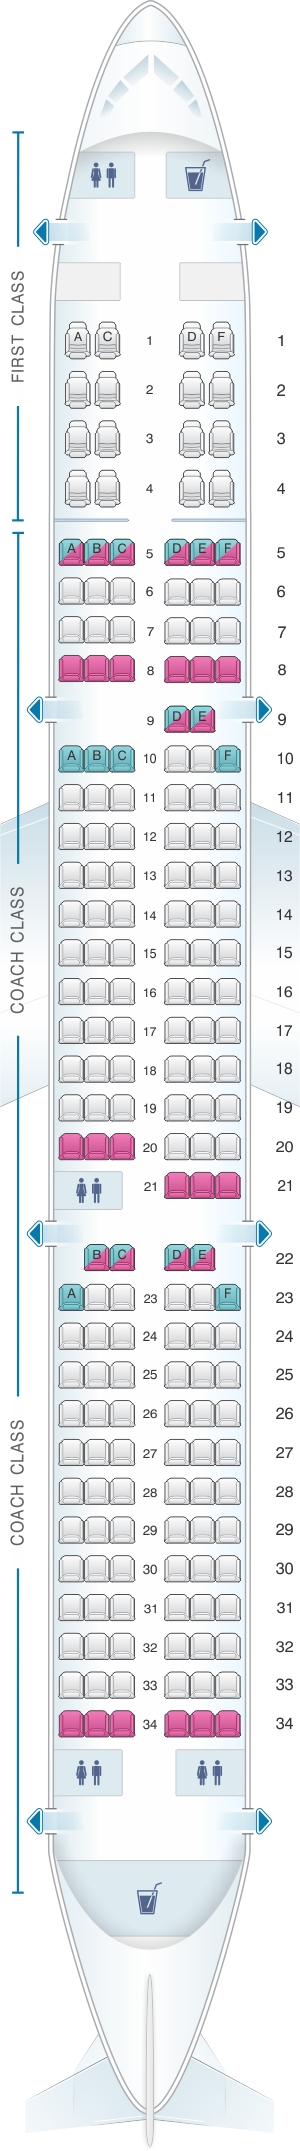 Airbus A321 Jet Seating Plan - Image to u